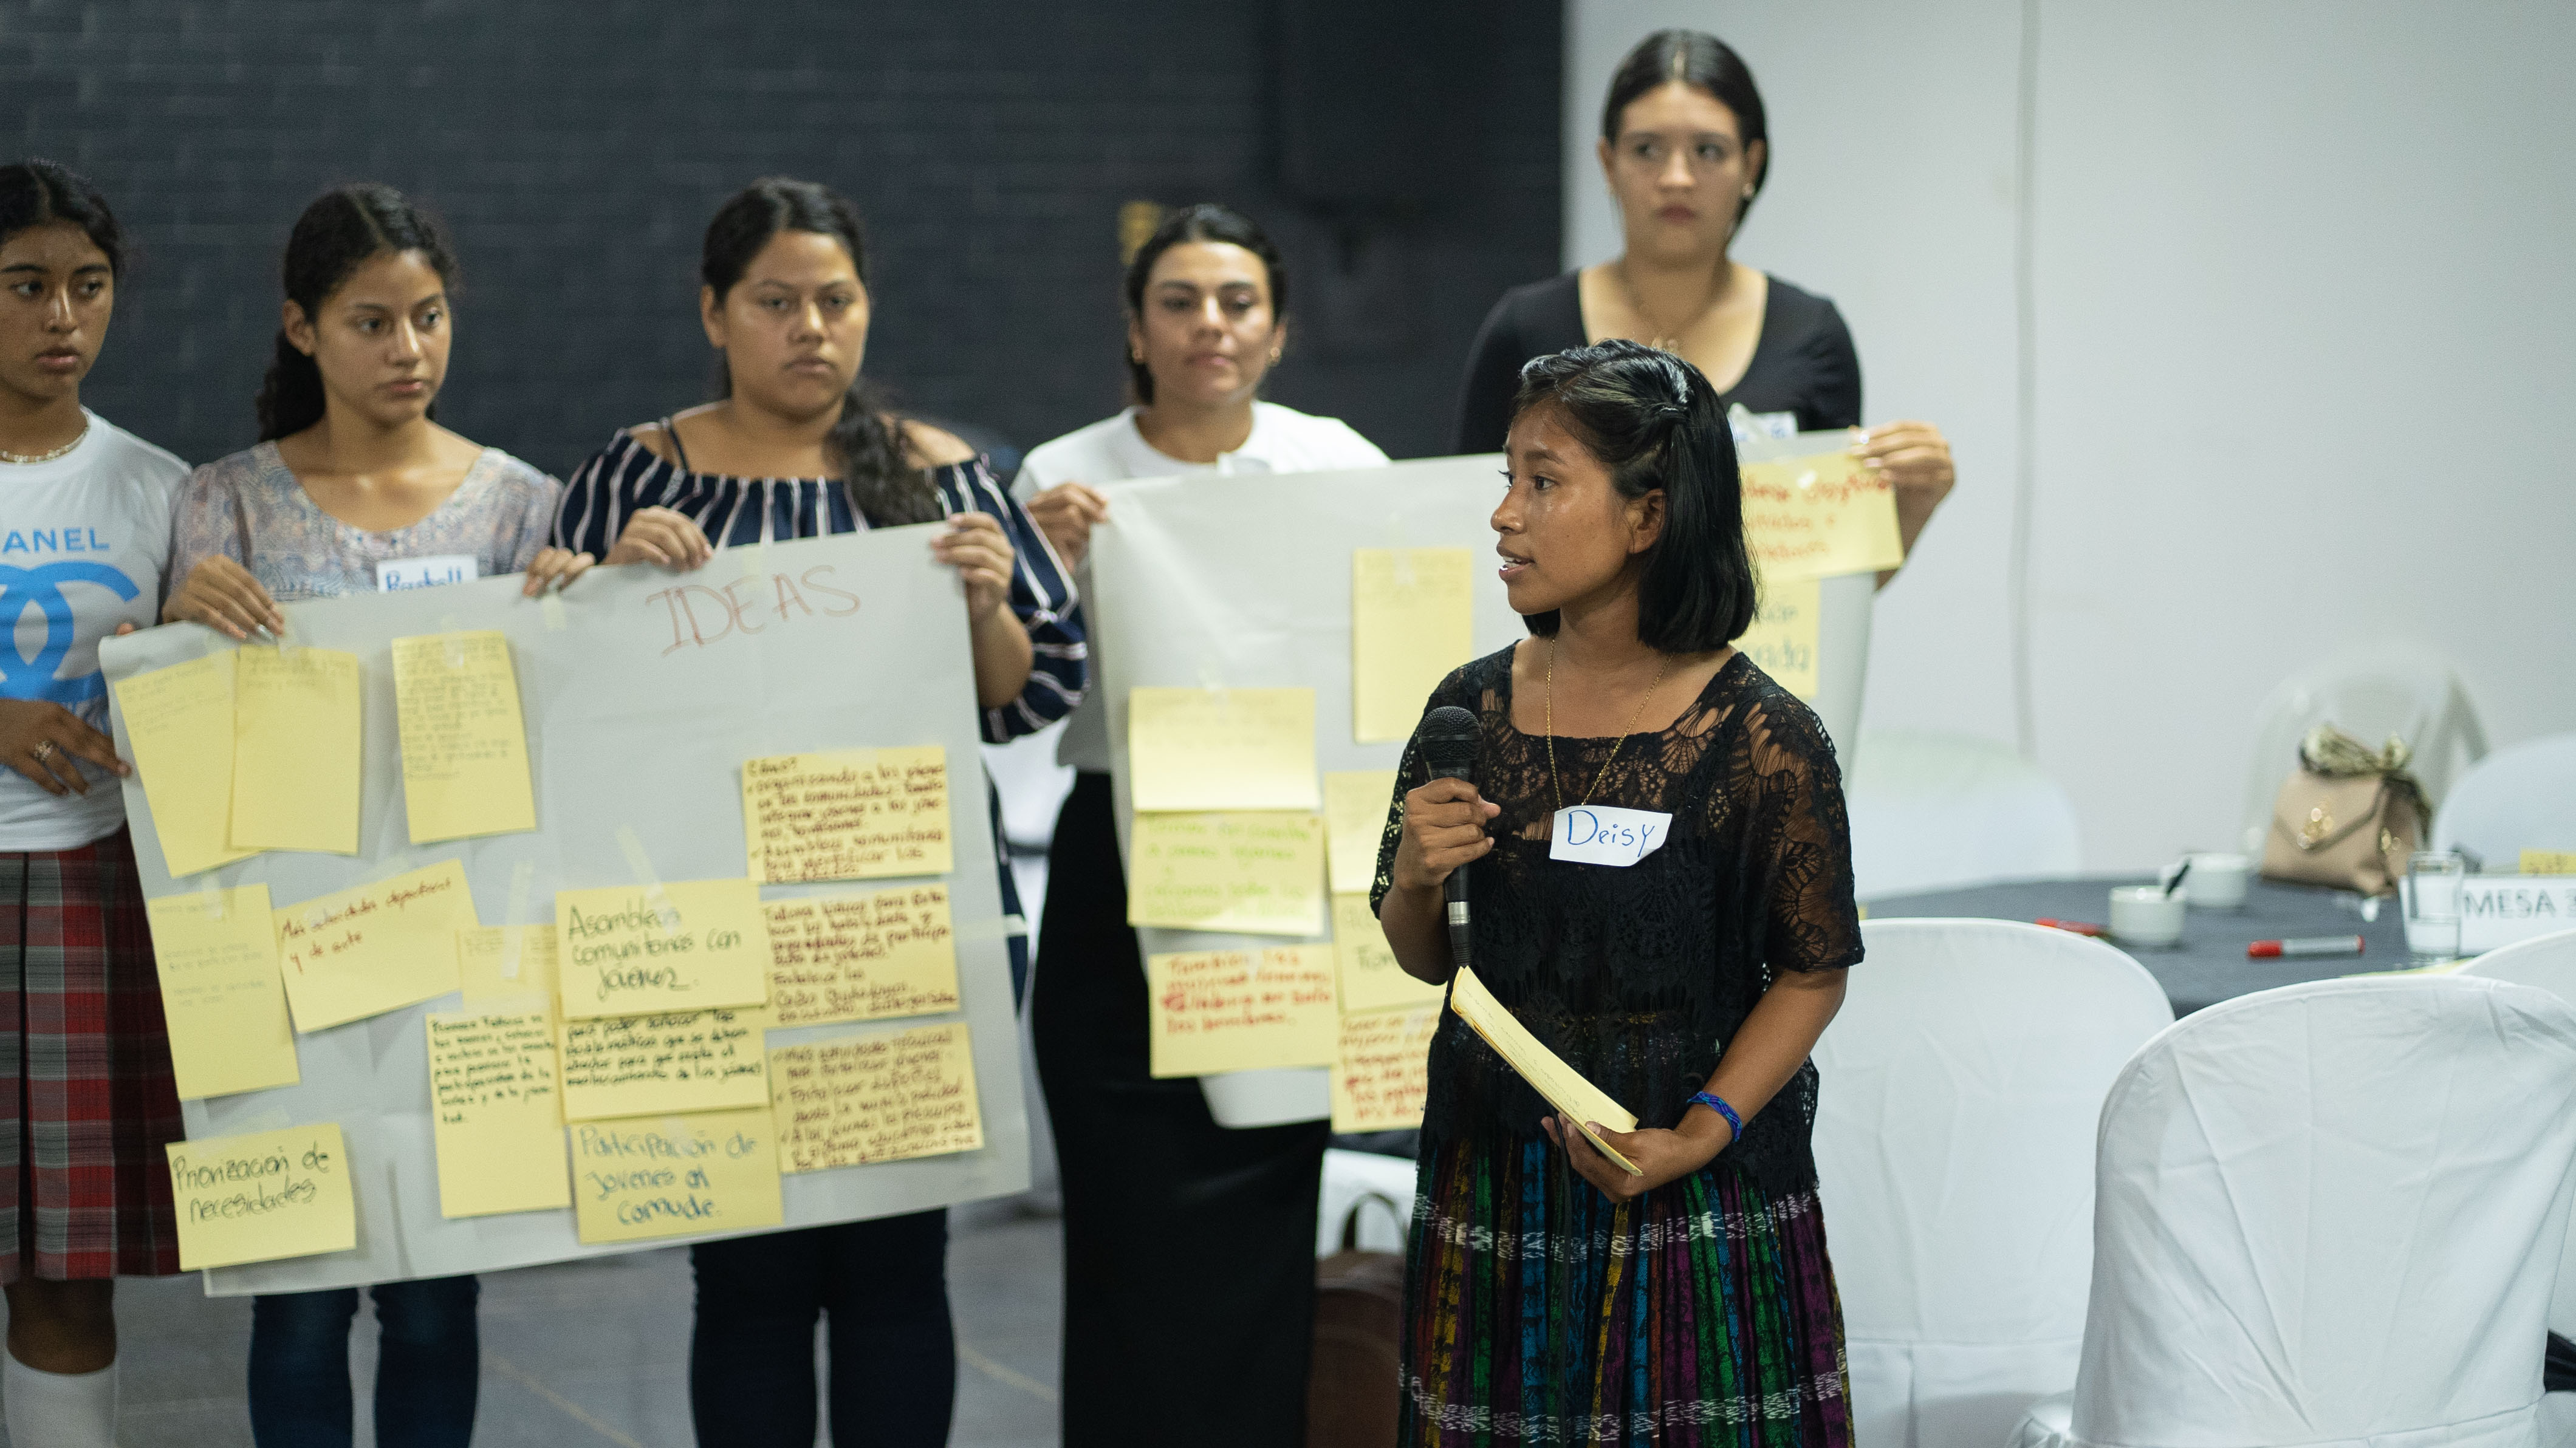 Aportes para la paz: Oportunidades para jóvenes en zonas rurales de Guatemala